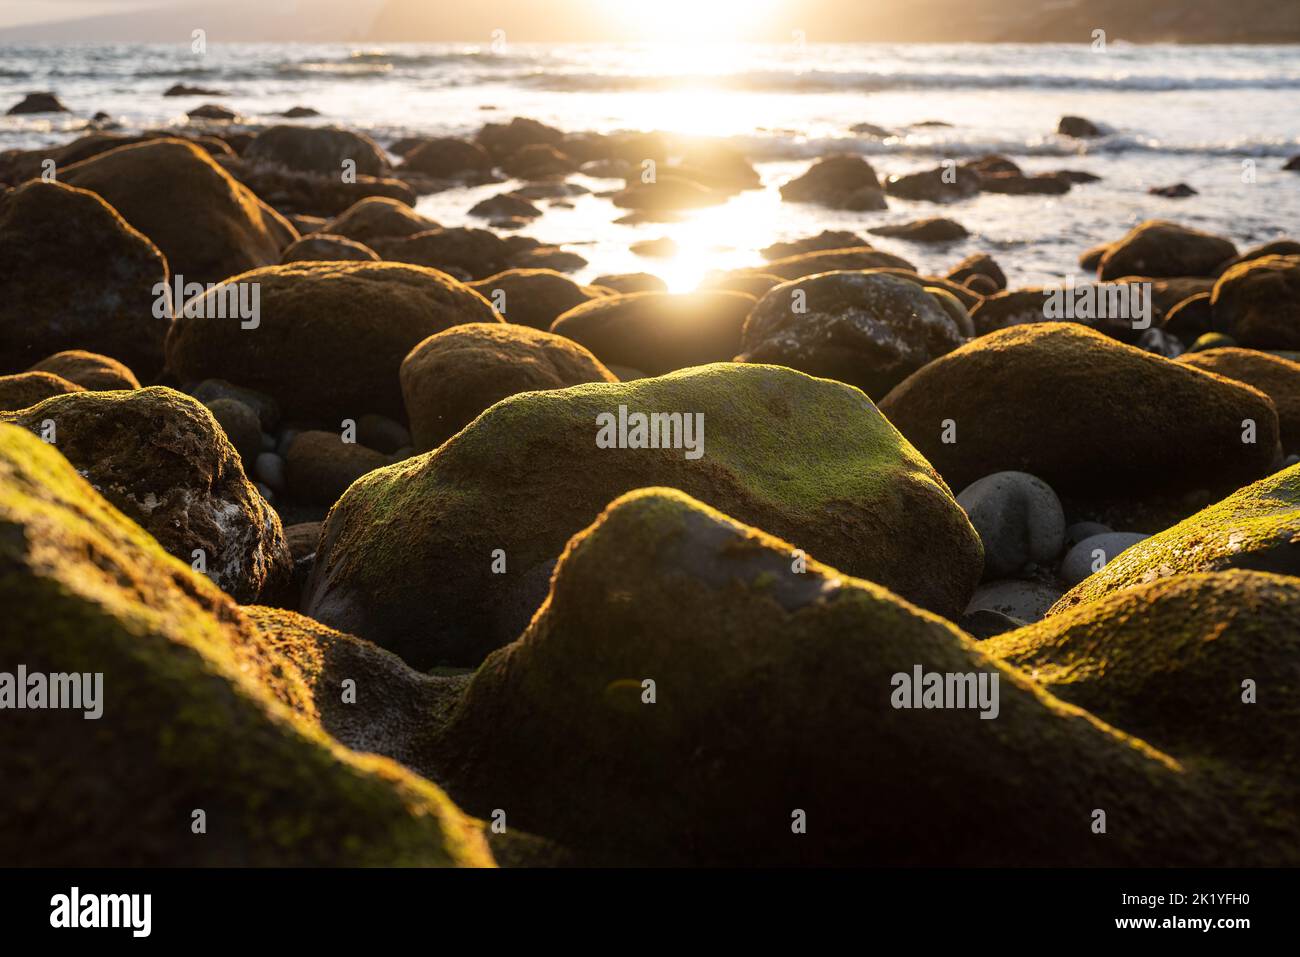 Rocce verdi di mare coperte di alghe al tramonto. Luce dorata nell'acqua dell'oceano Foto Stock